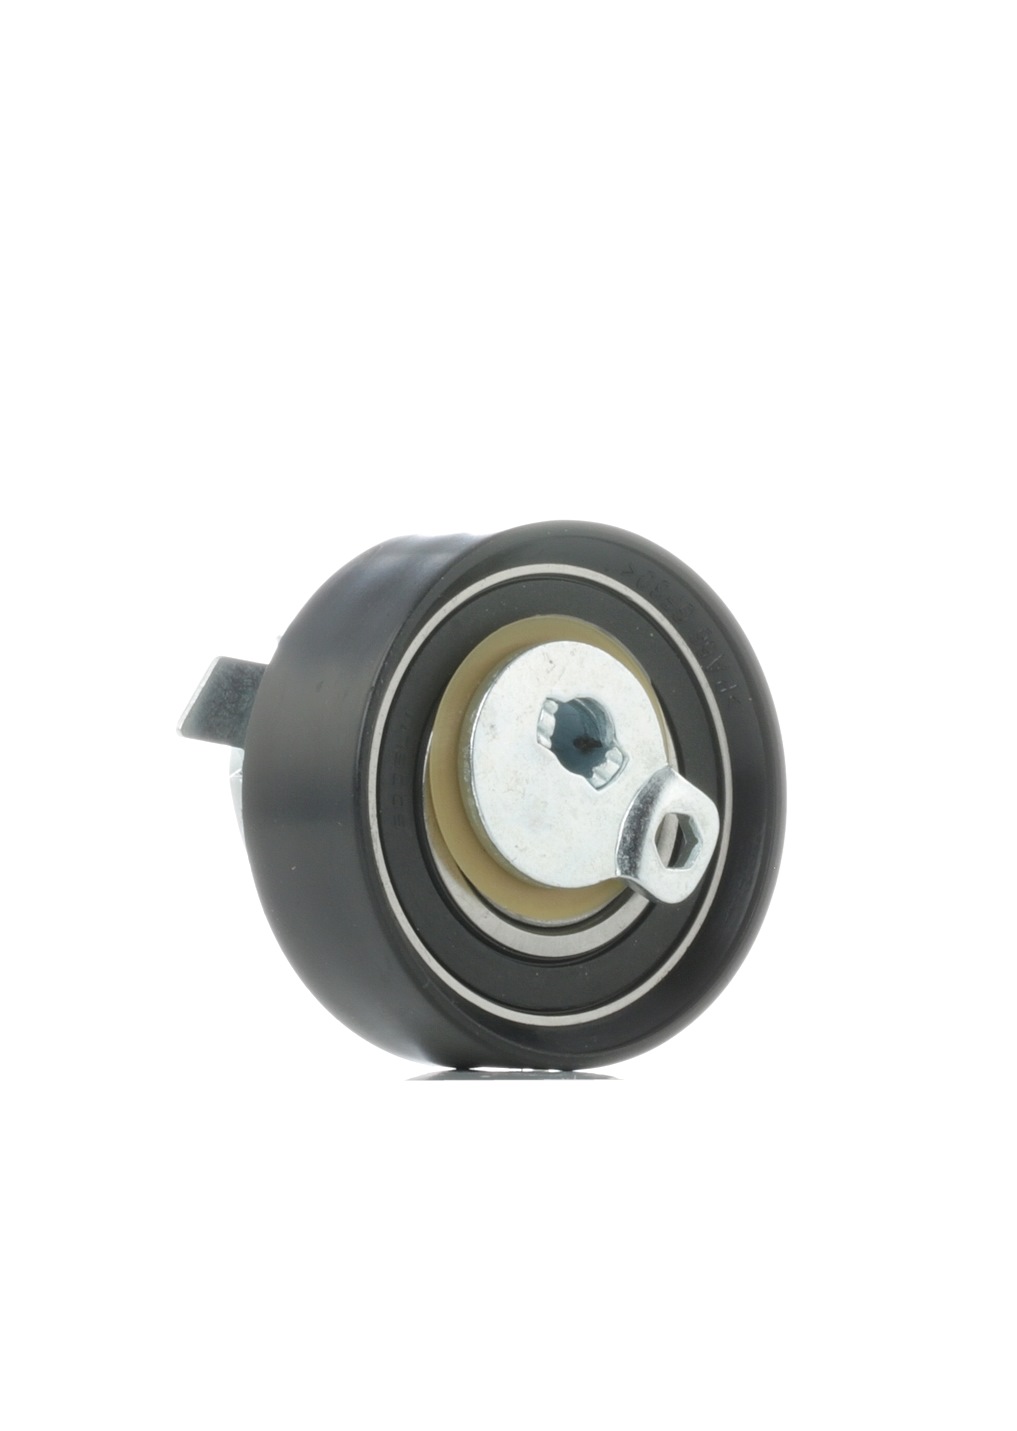 Original SKTPT-0650188 STARK Timing belt tensioner pulley VW